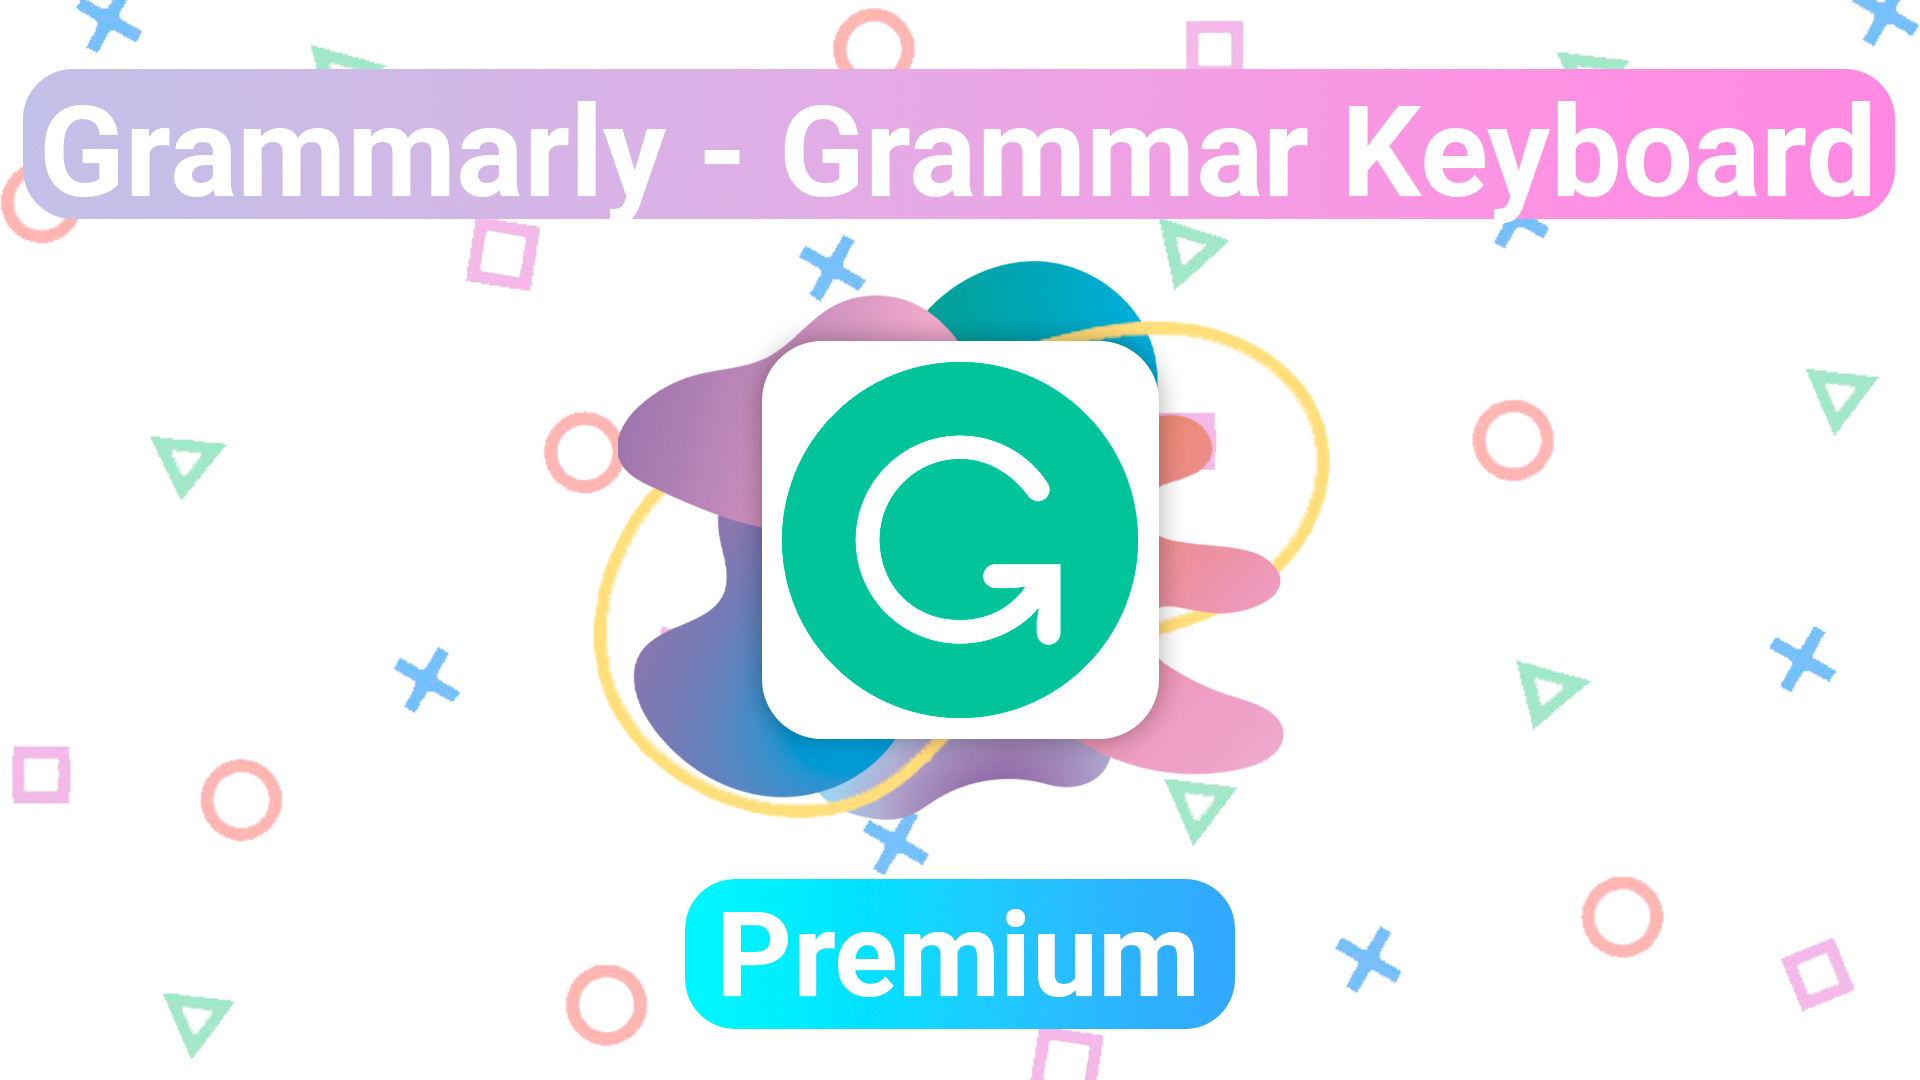 grammarly-grammar-keyboard-premium-android-ultima-version